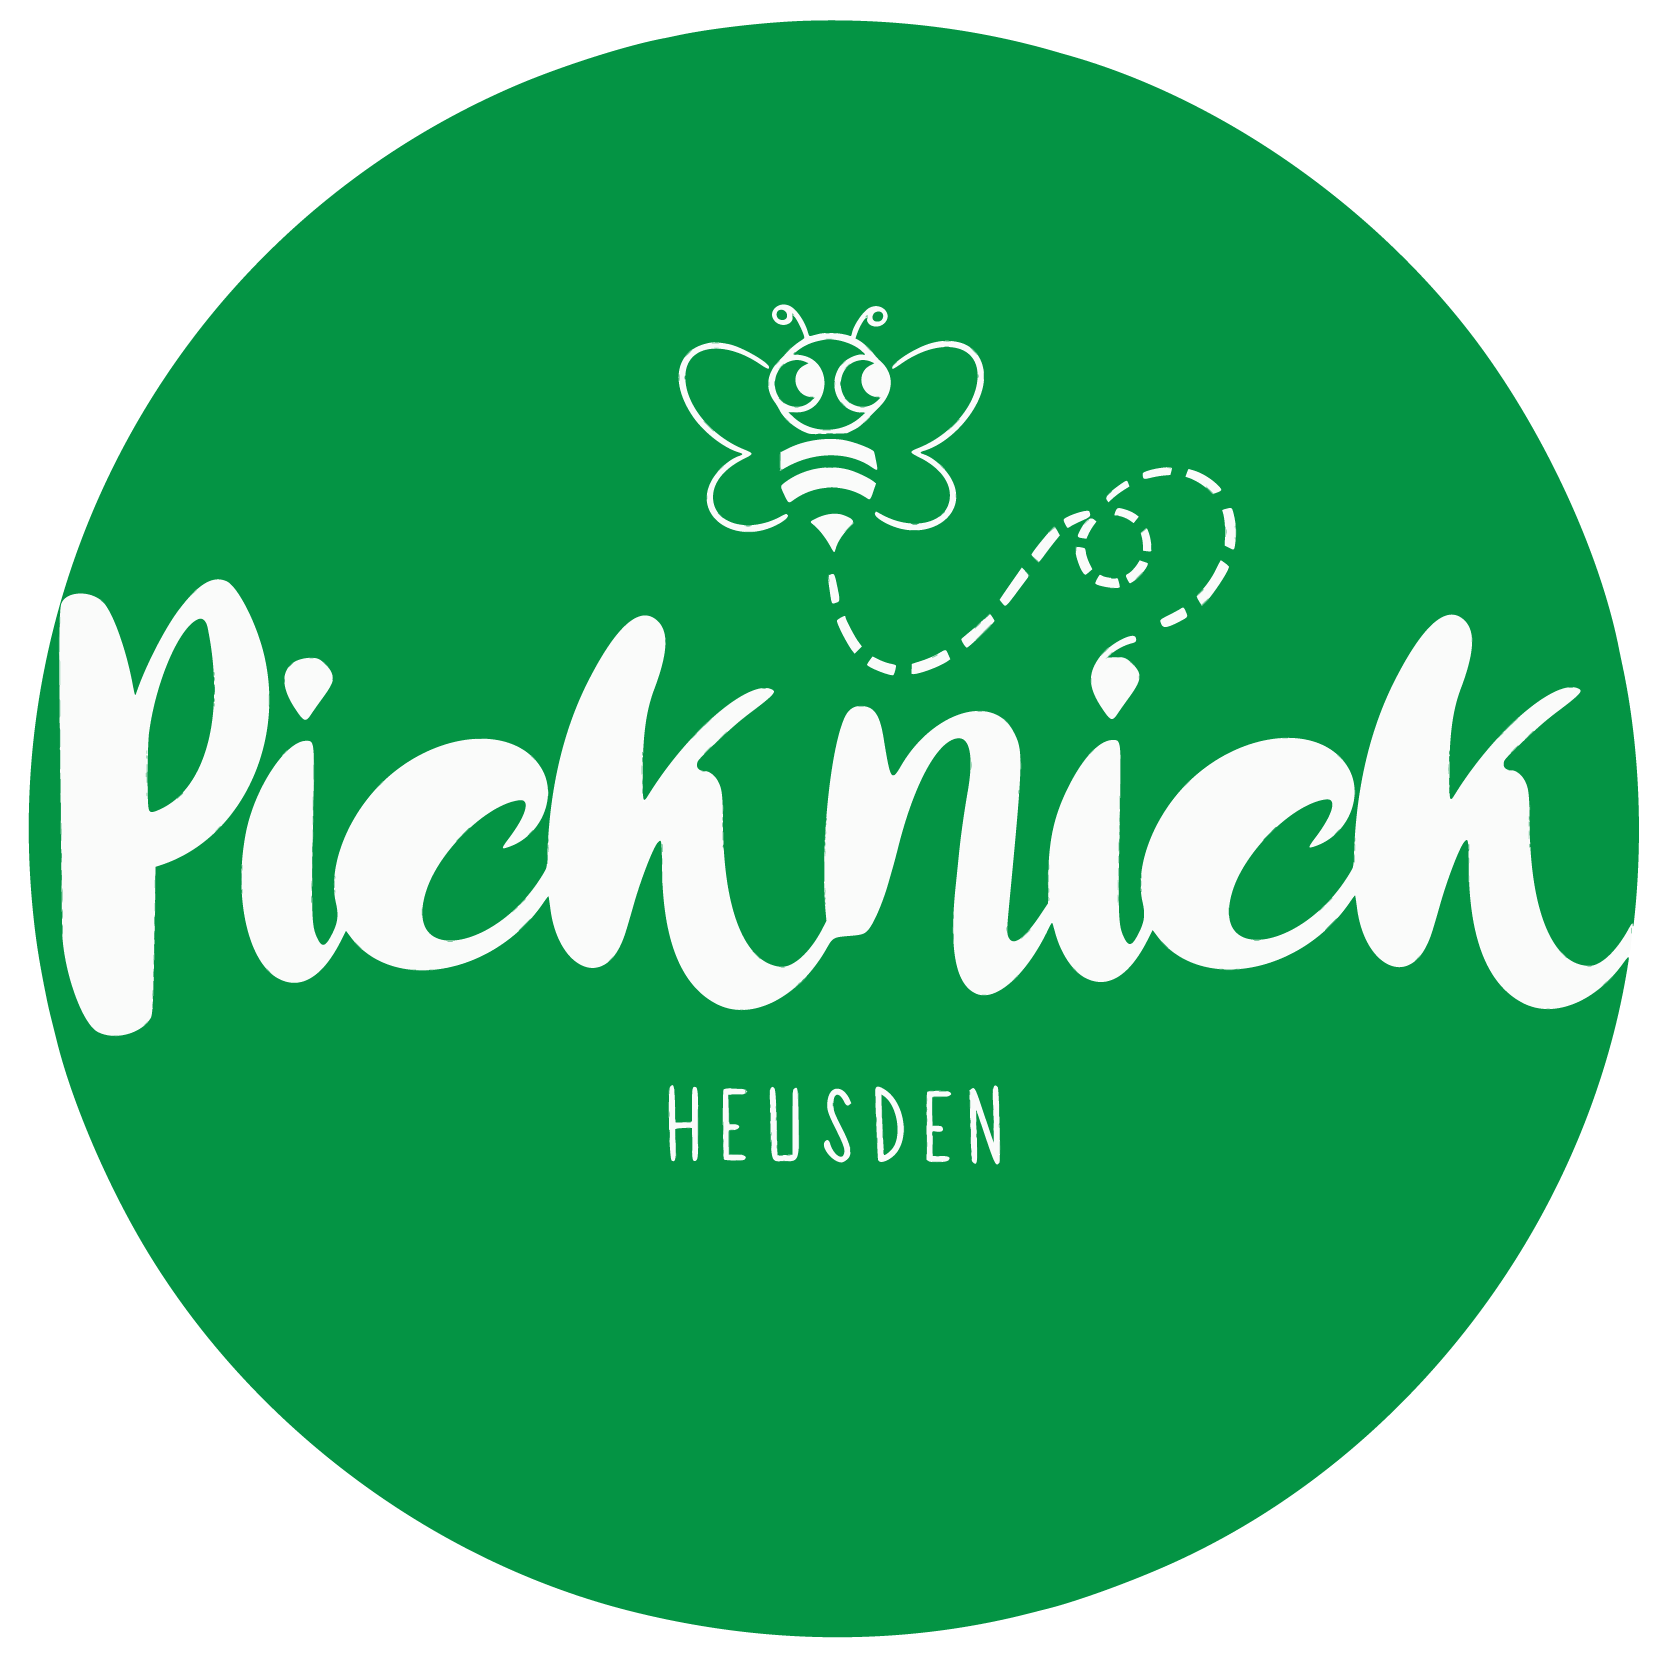 Picknick Heusden